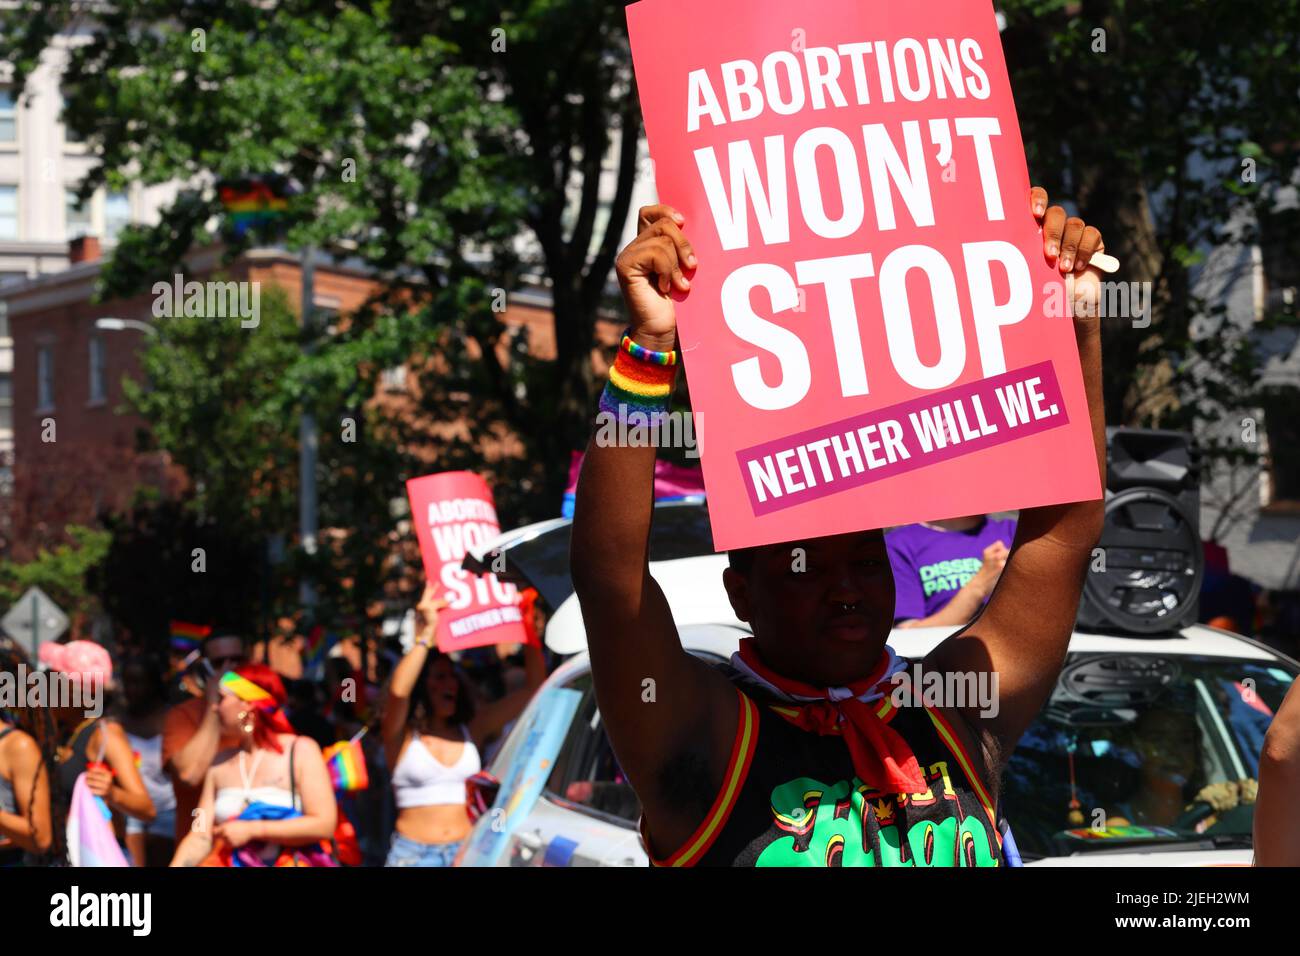 New York, 26 giugno 2022. Una persona ha un cartello, 'aborti non si ferma né Will We' a NYC Pride alcuni giorni dopo il rovesciamento di Roe v. Wade. Foto Stock